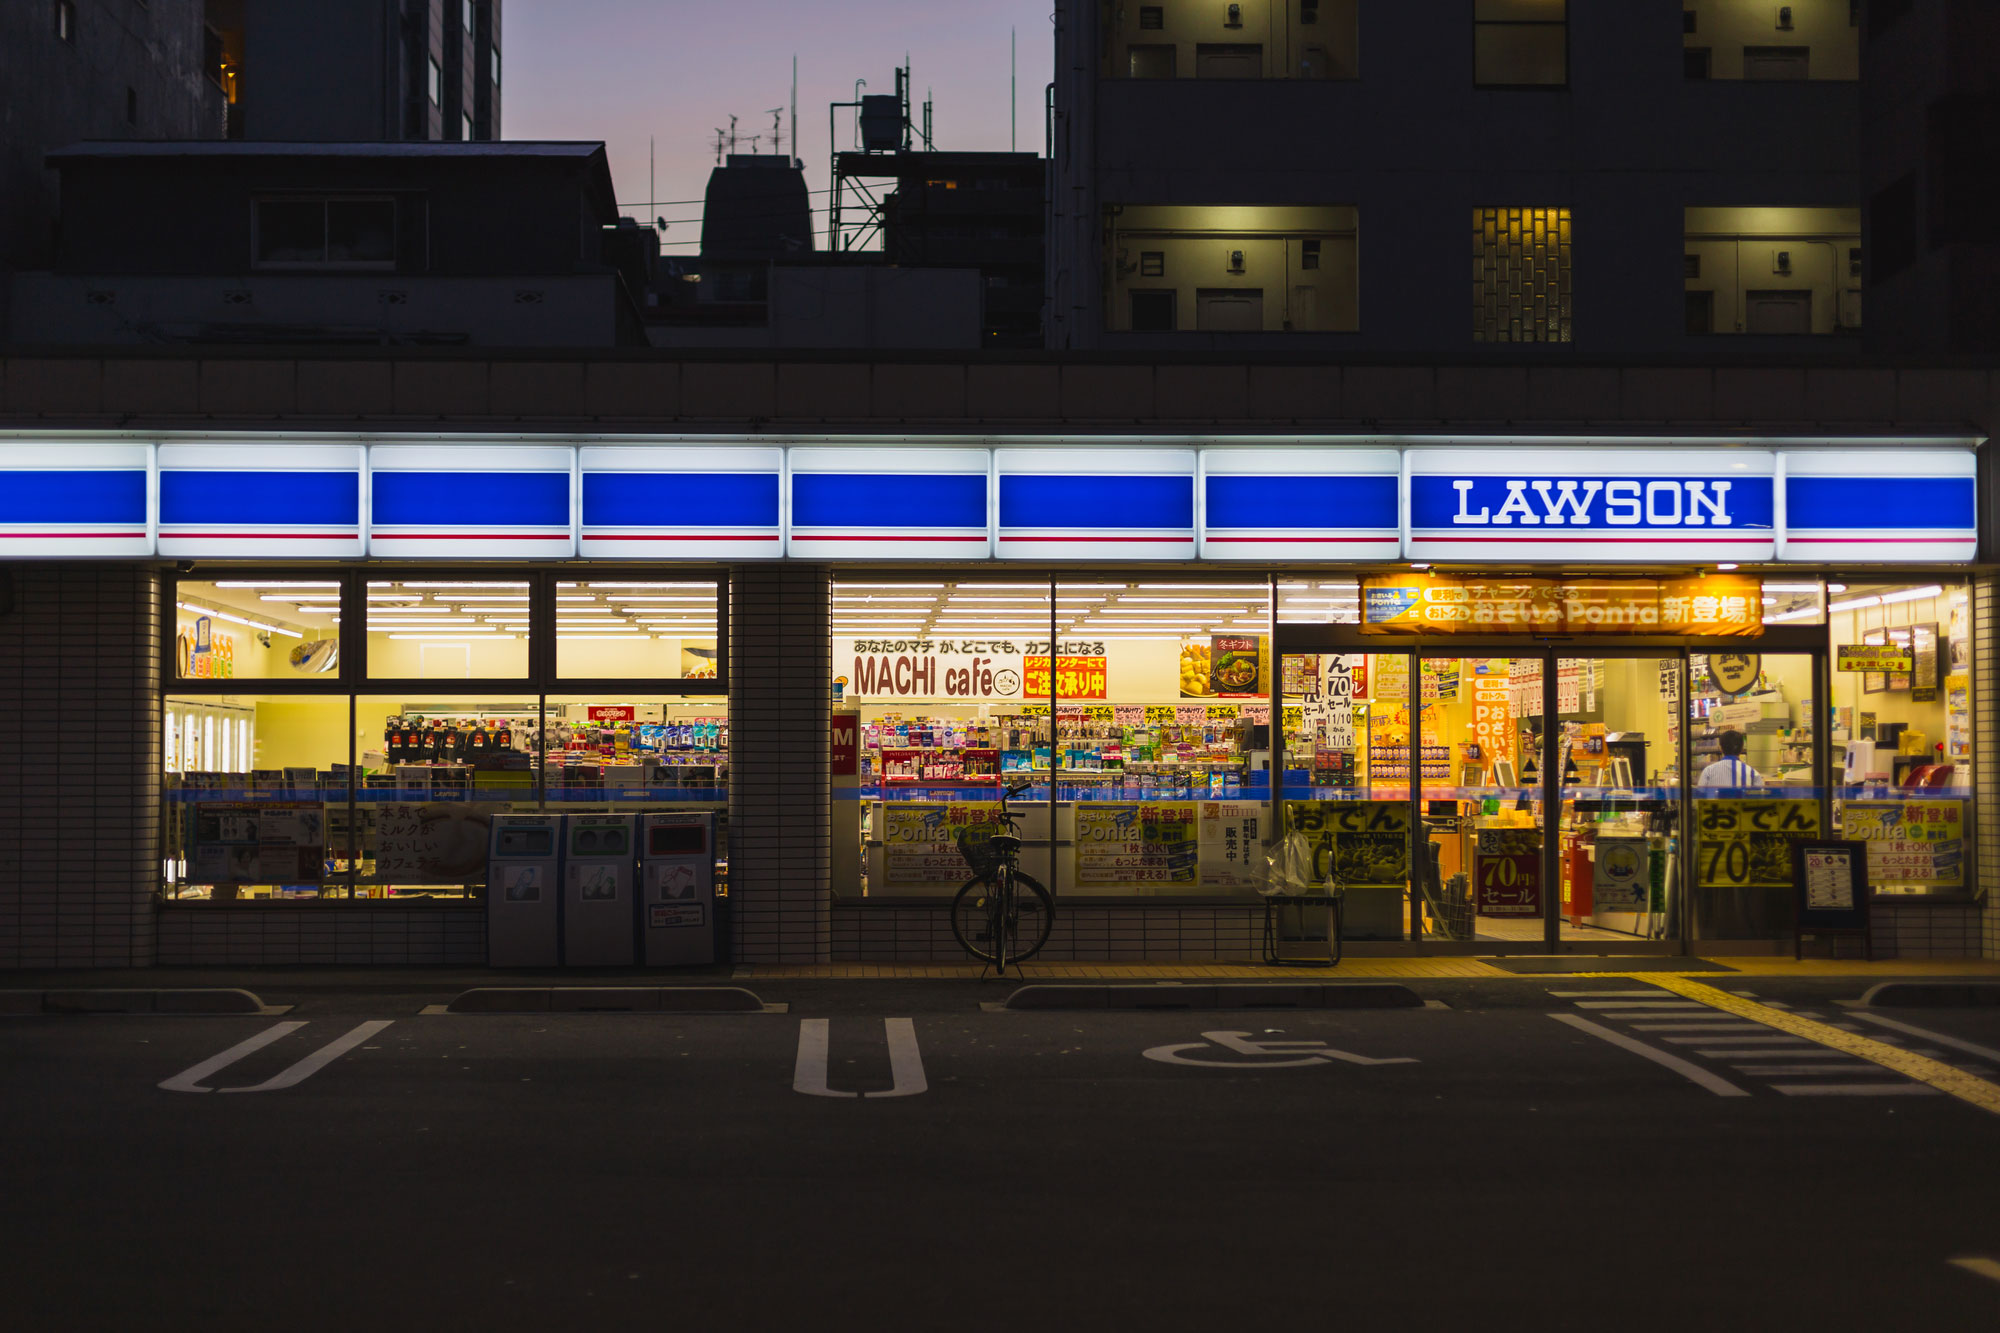 Ein Lawson in Japan.